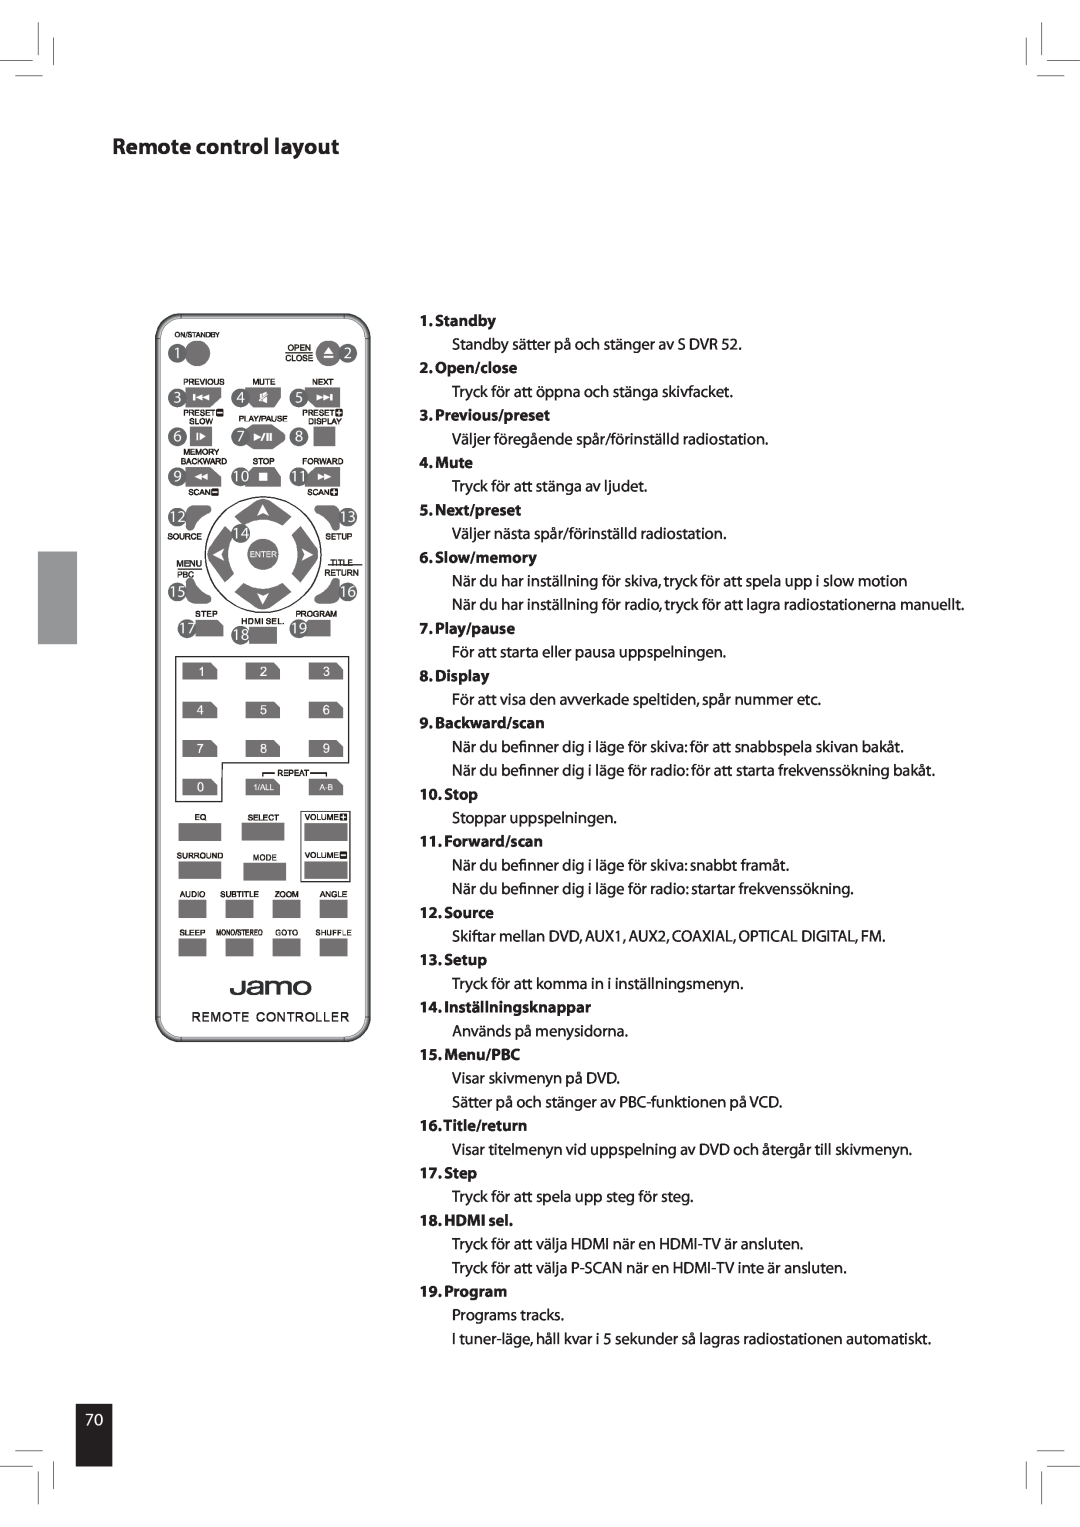 JAMO S 502 manual Remote control layout, Standby sätter på och stänger av S DVR 